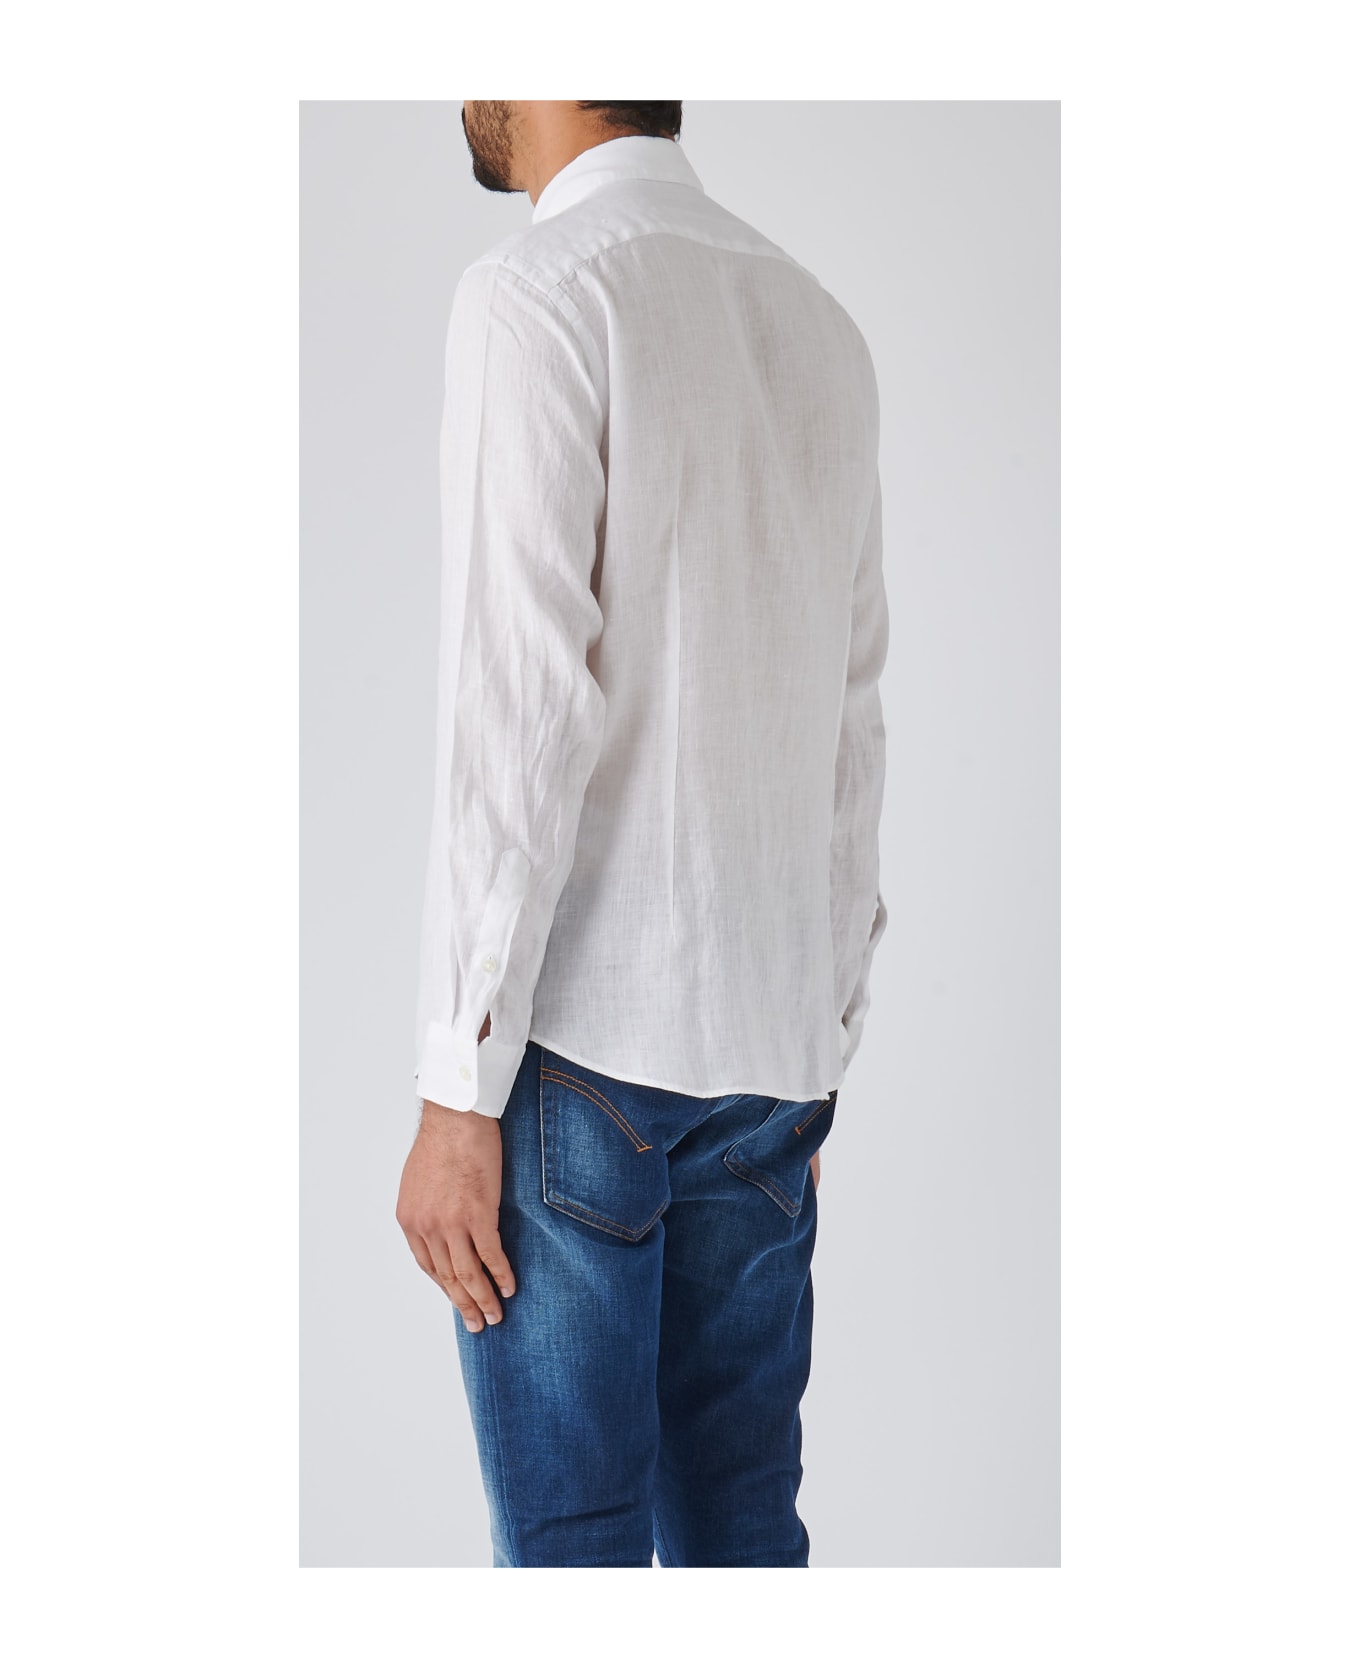 Altea Camicia Uomo Shirt - BIANCO